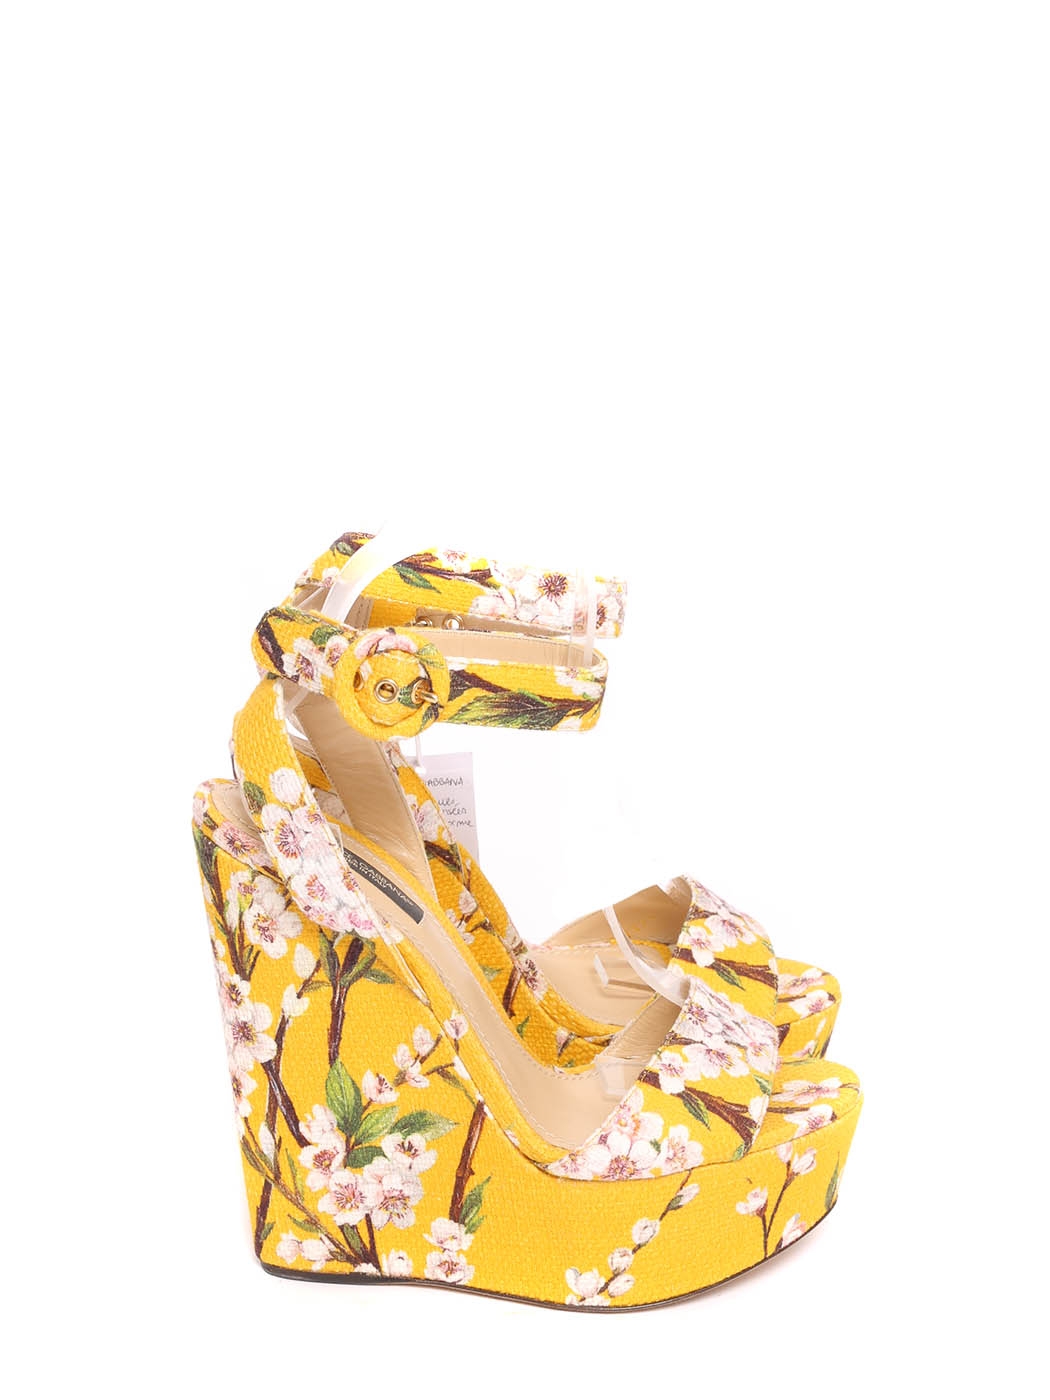 Louis Vuitton Blossom Sandal Gold. Size 38.5